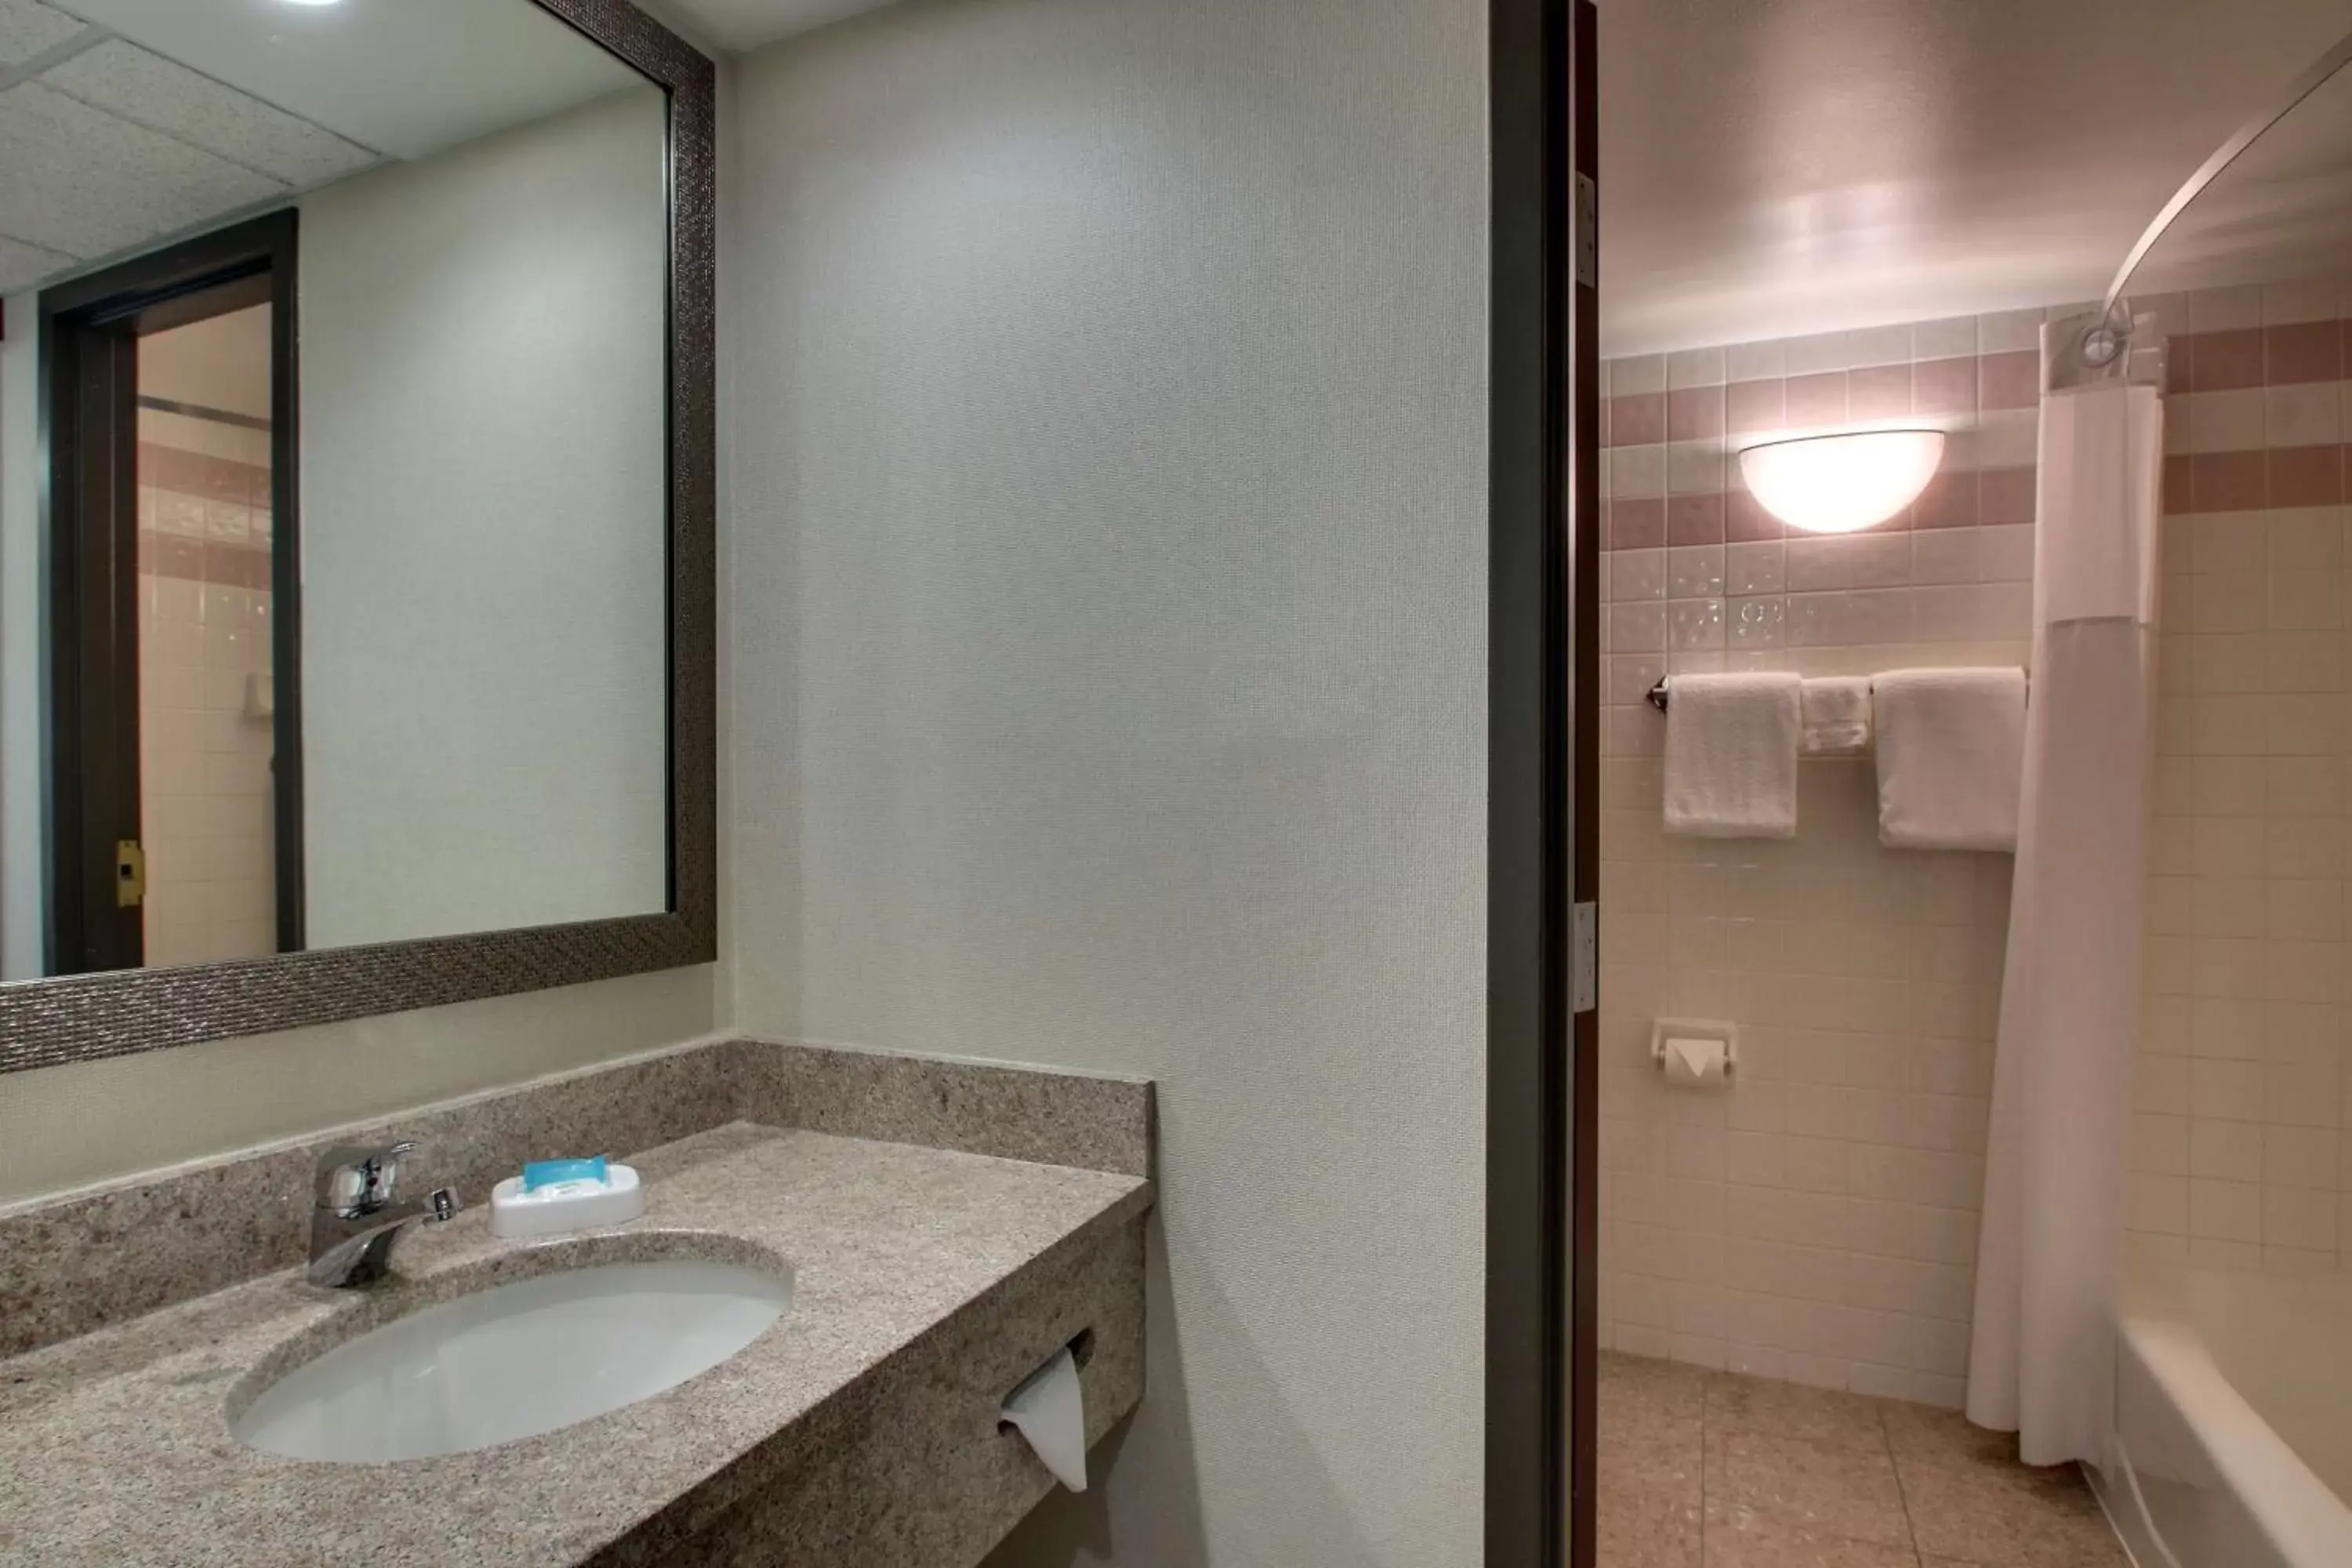 Bathroom in Drury Inn & Suites Evansville East